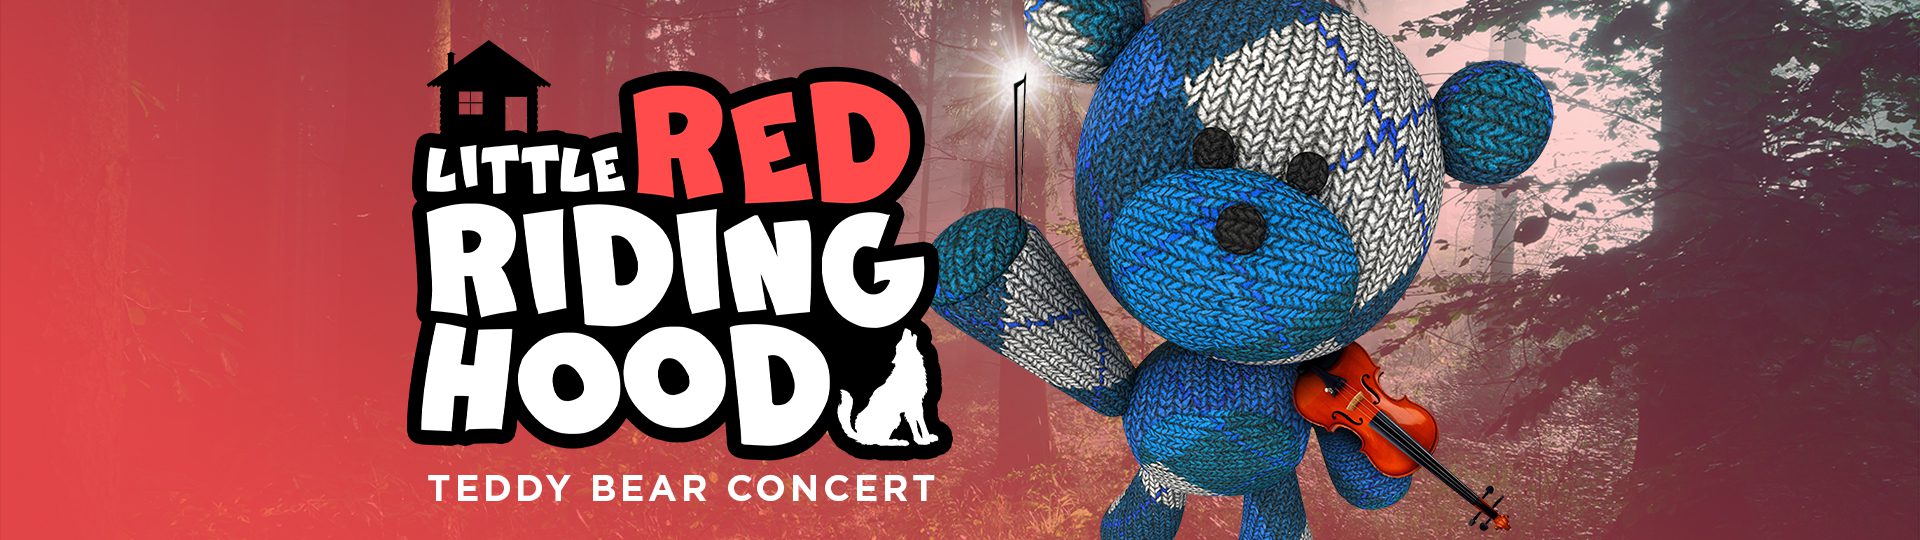 Little Red Riding Hood—Teddy Bear Concert